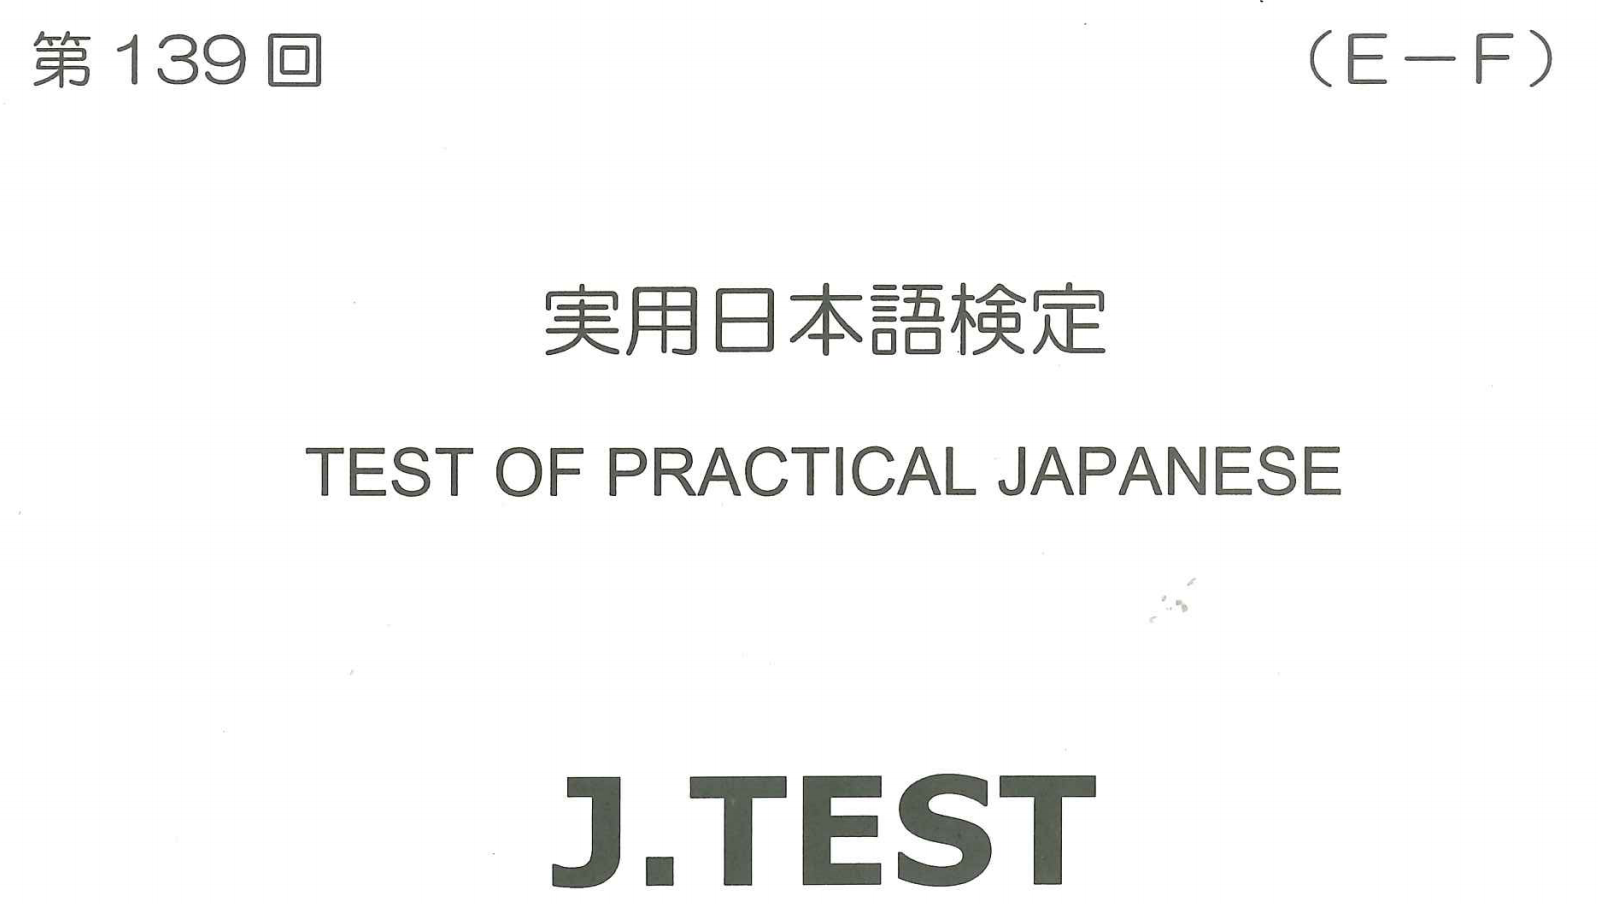 2018年 J.TEST 实用日本语检定（E-F级）   第139回考试